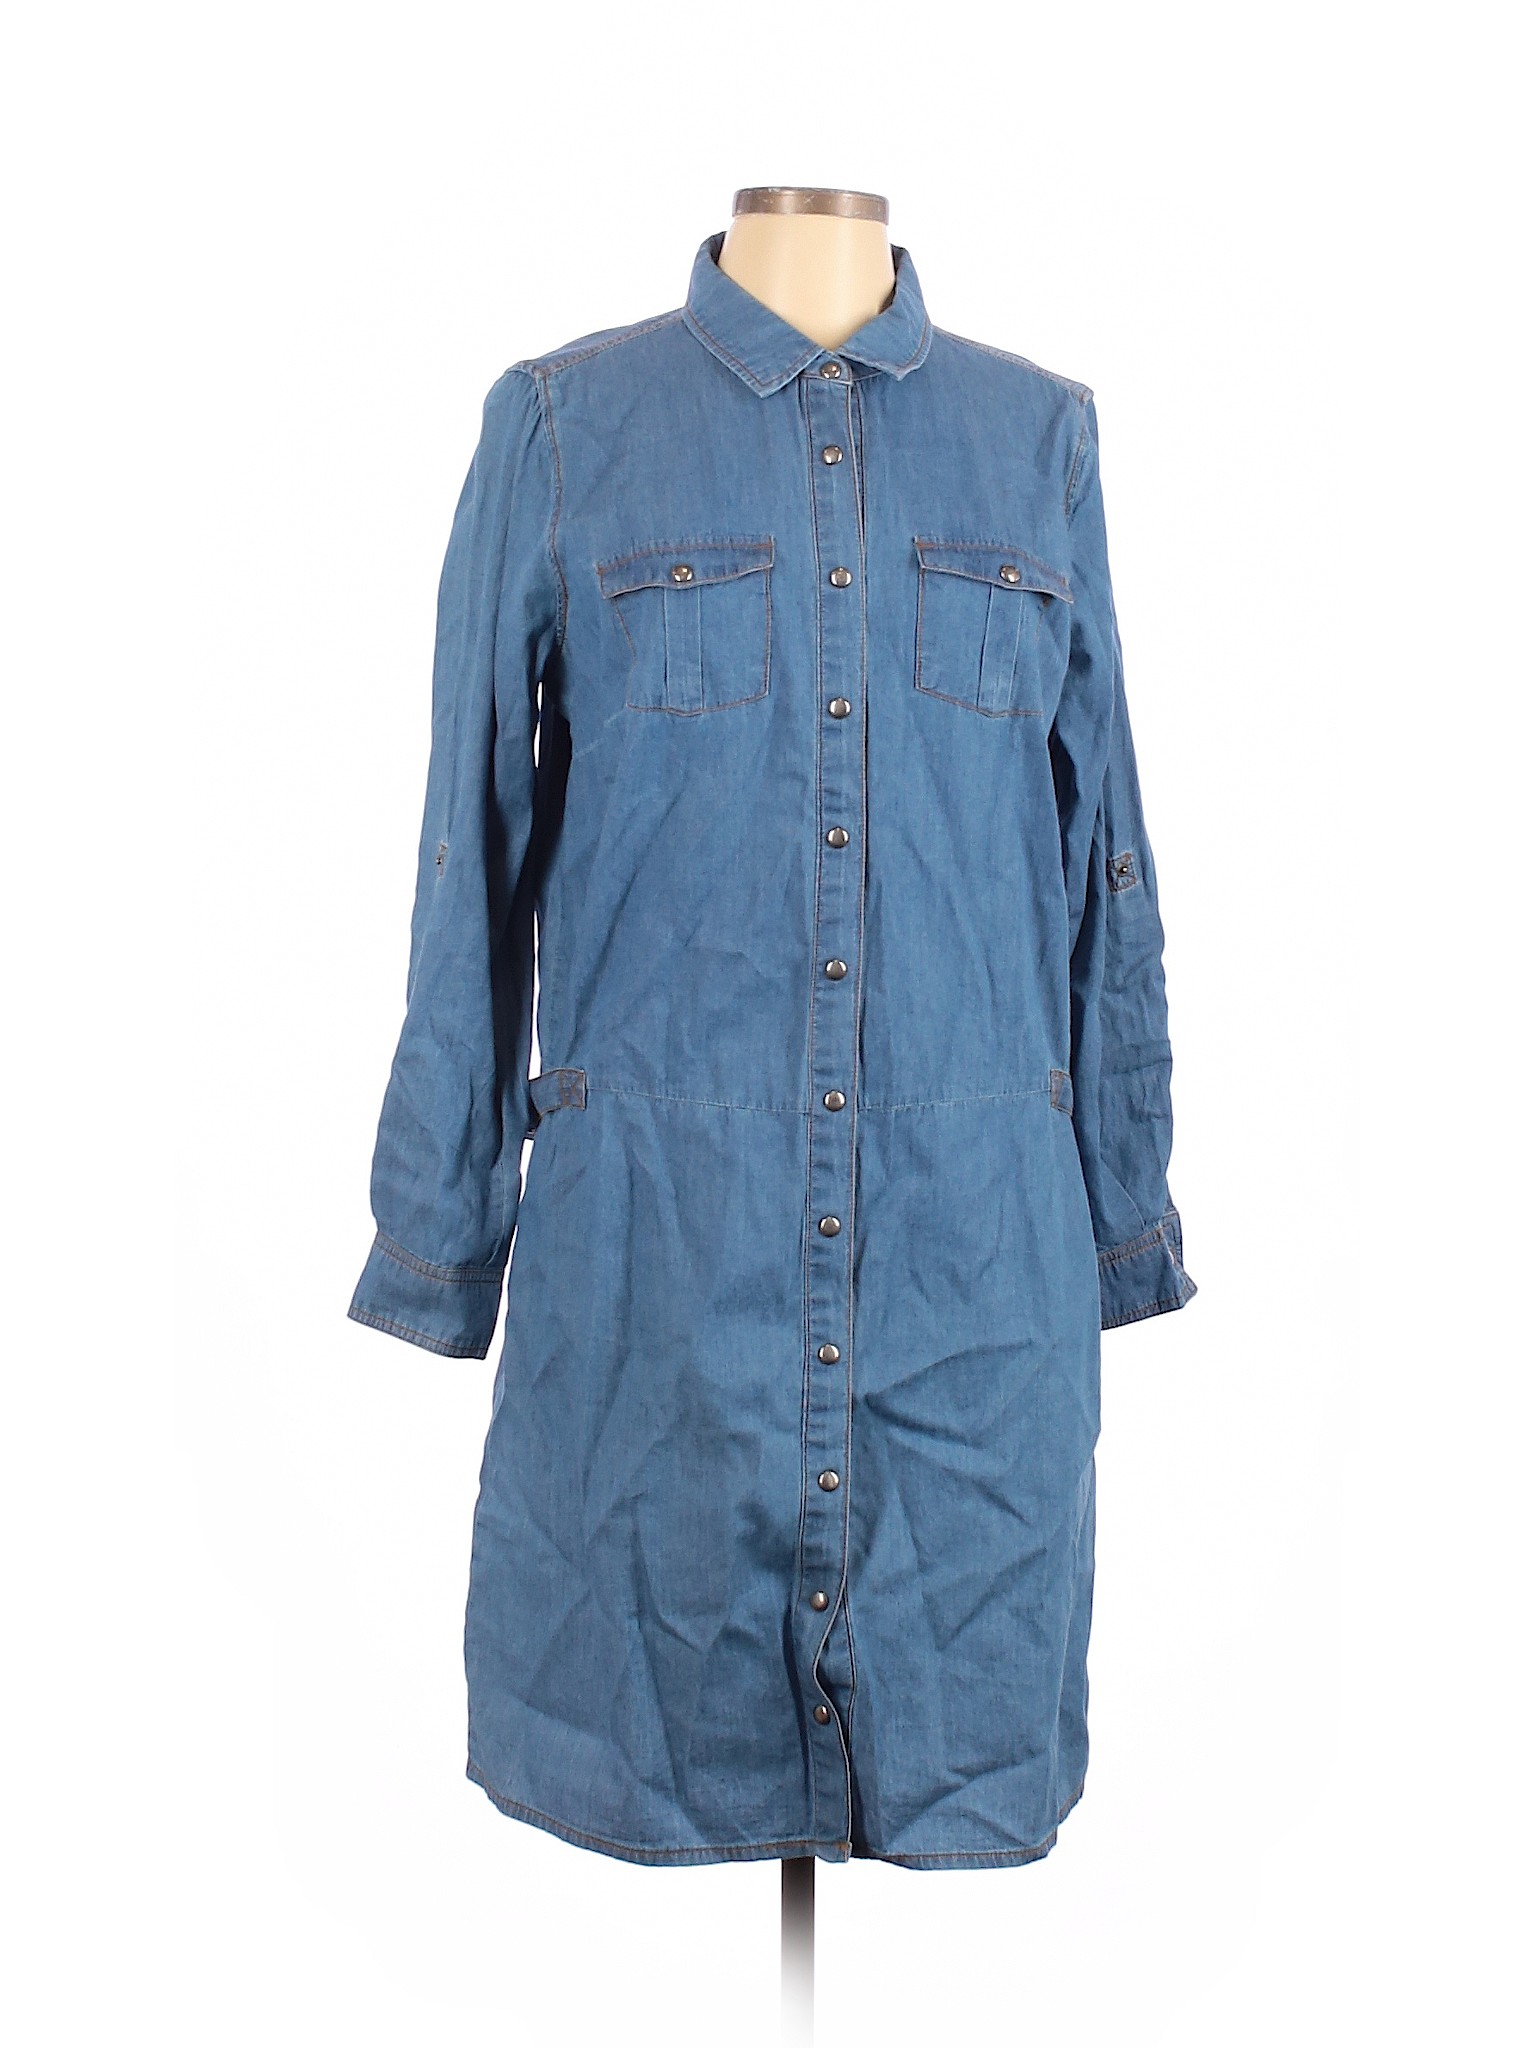 Yest Women Blue Casual Dress 10 | eBay